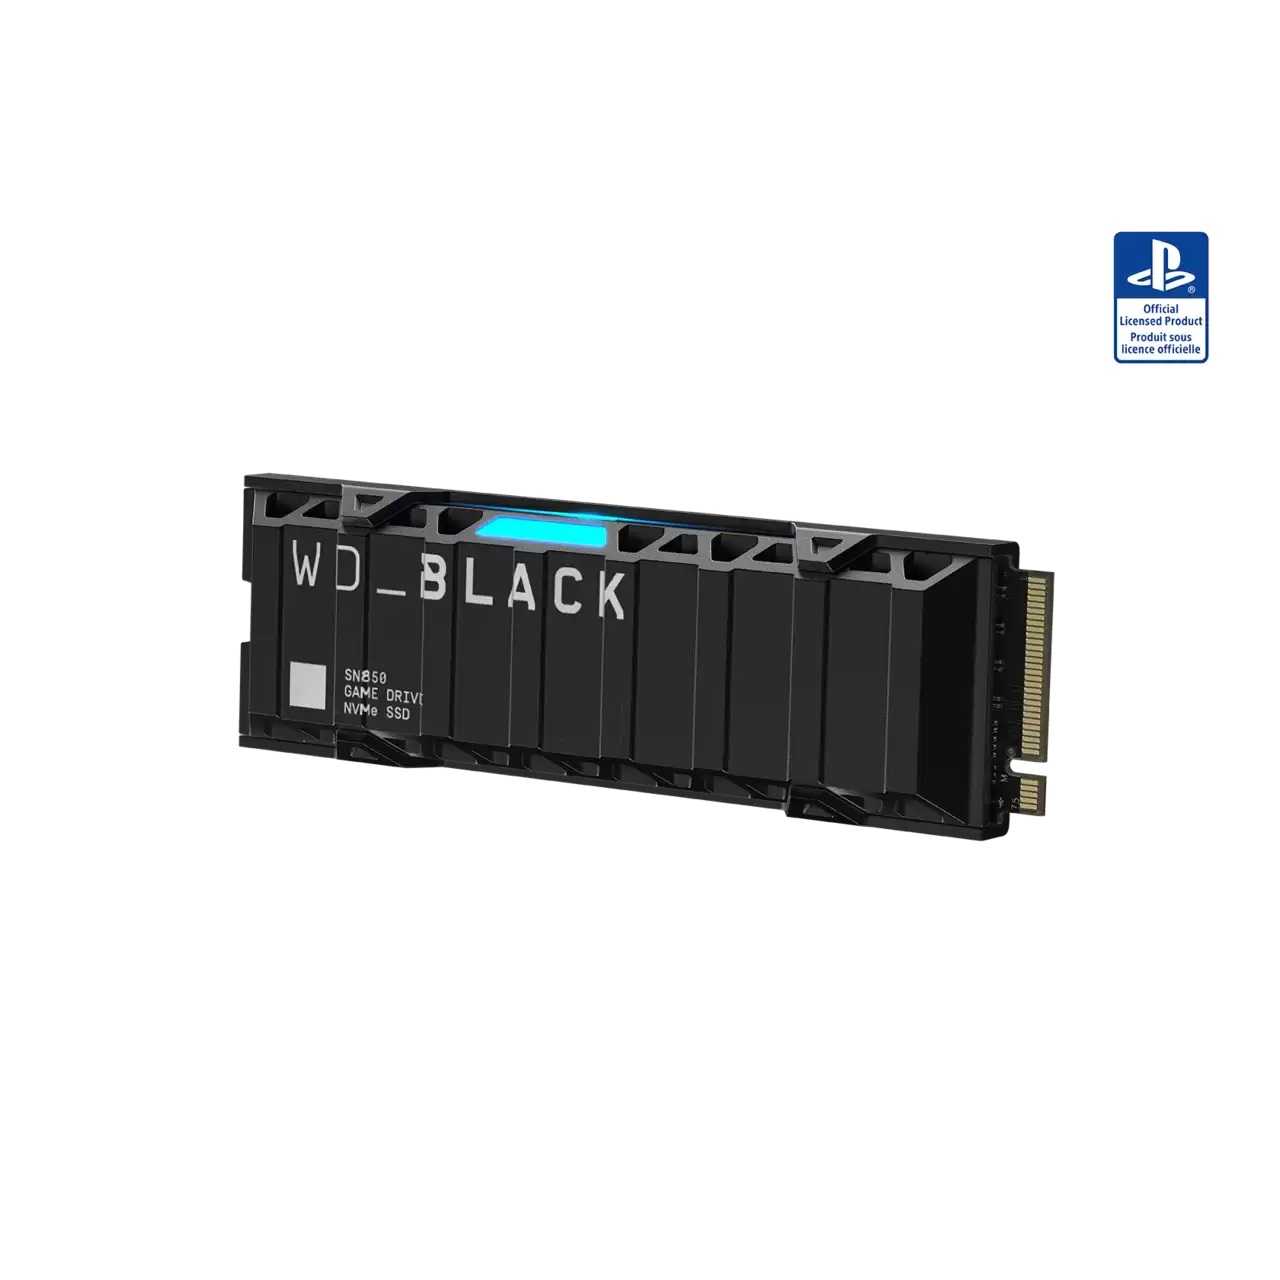 【就是要玩】PS5 專用固態硬碟 WD BLACK 黑標 SN850 1TB 2TB M.2 NVMe PCIe SSD